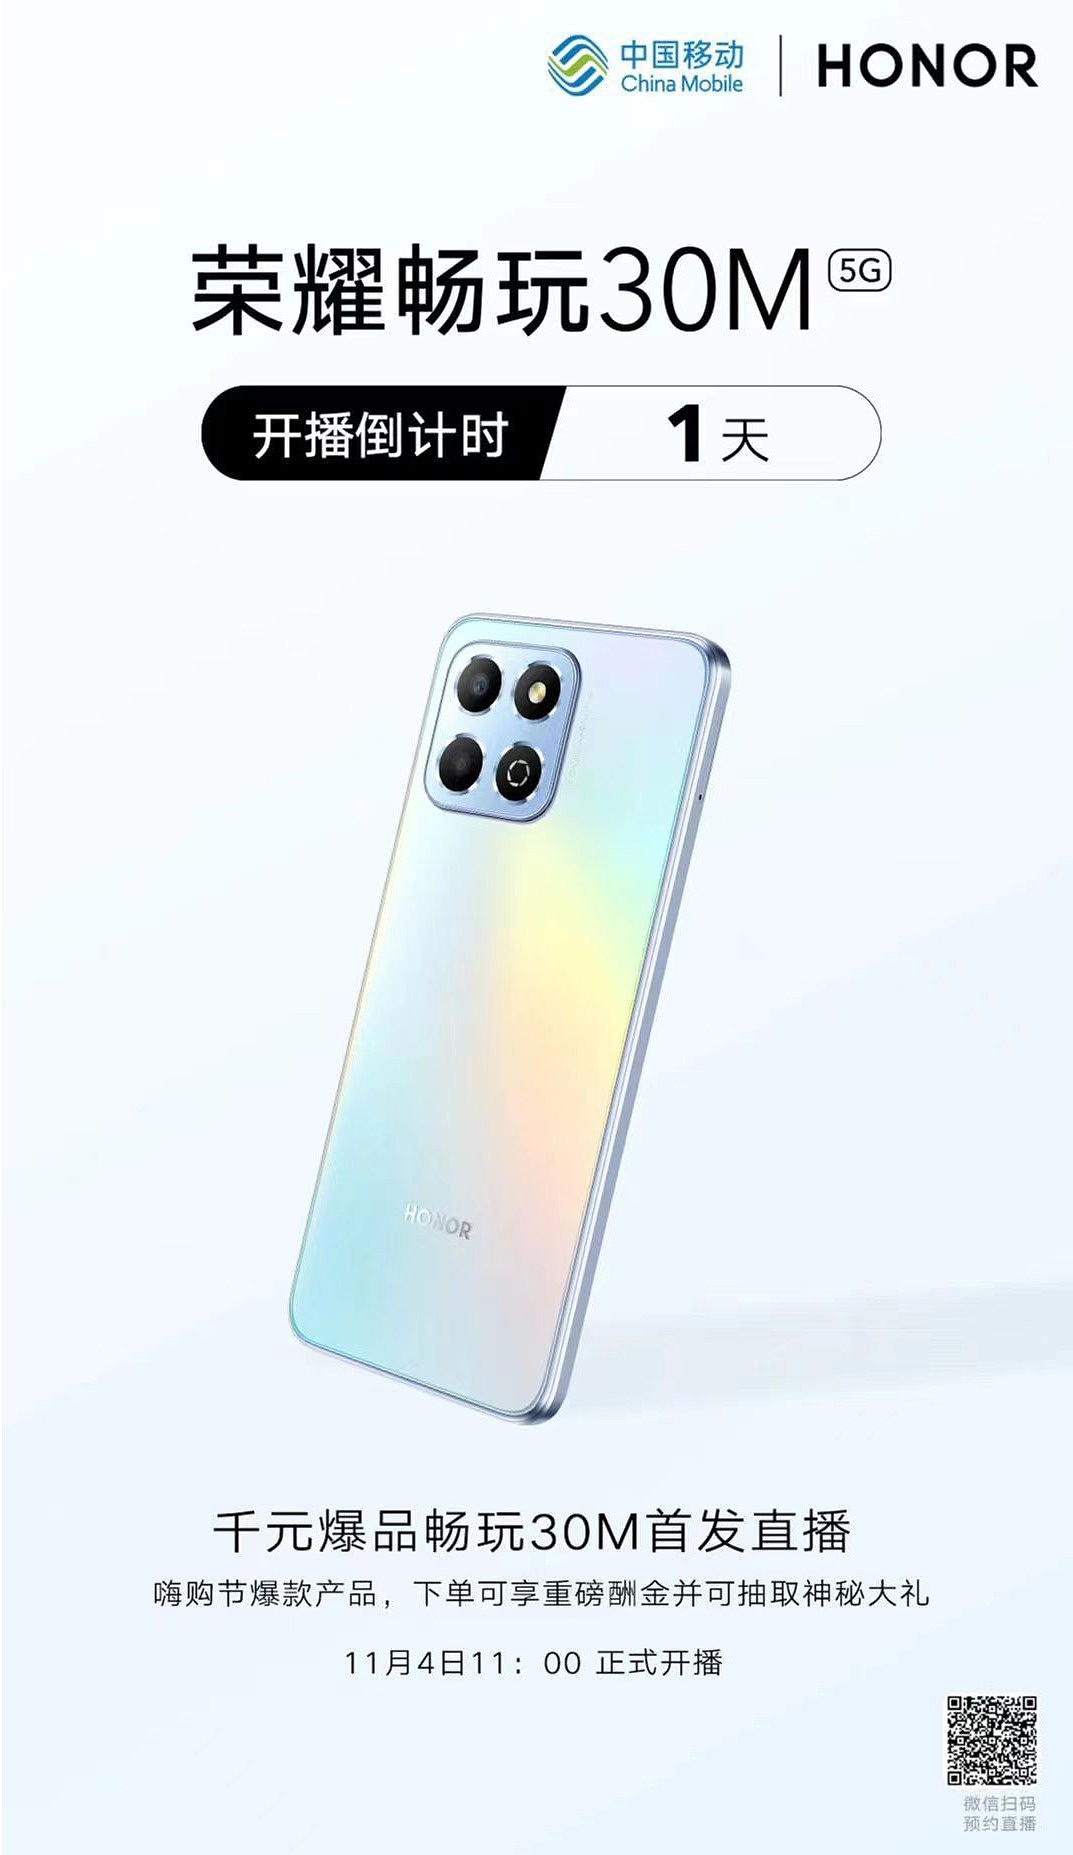 中国移动联合荣耀推出新款畅玩 30M 手机，新增侧边指纹和 200 万像素镜头 - 2